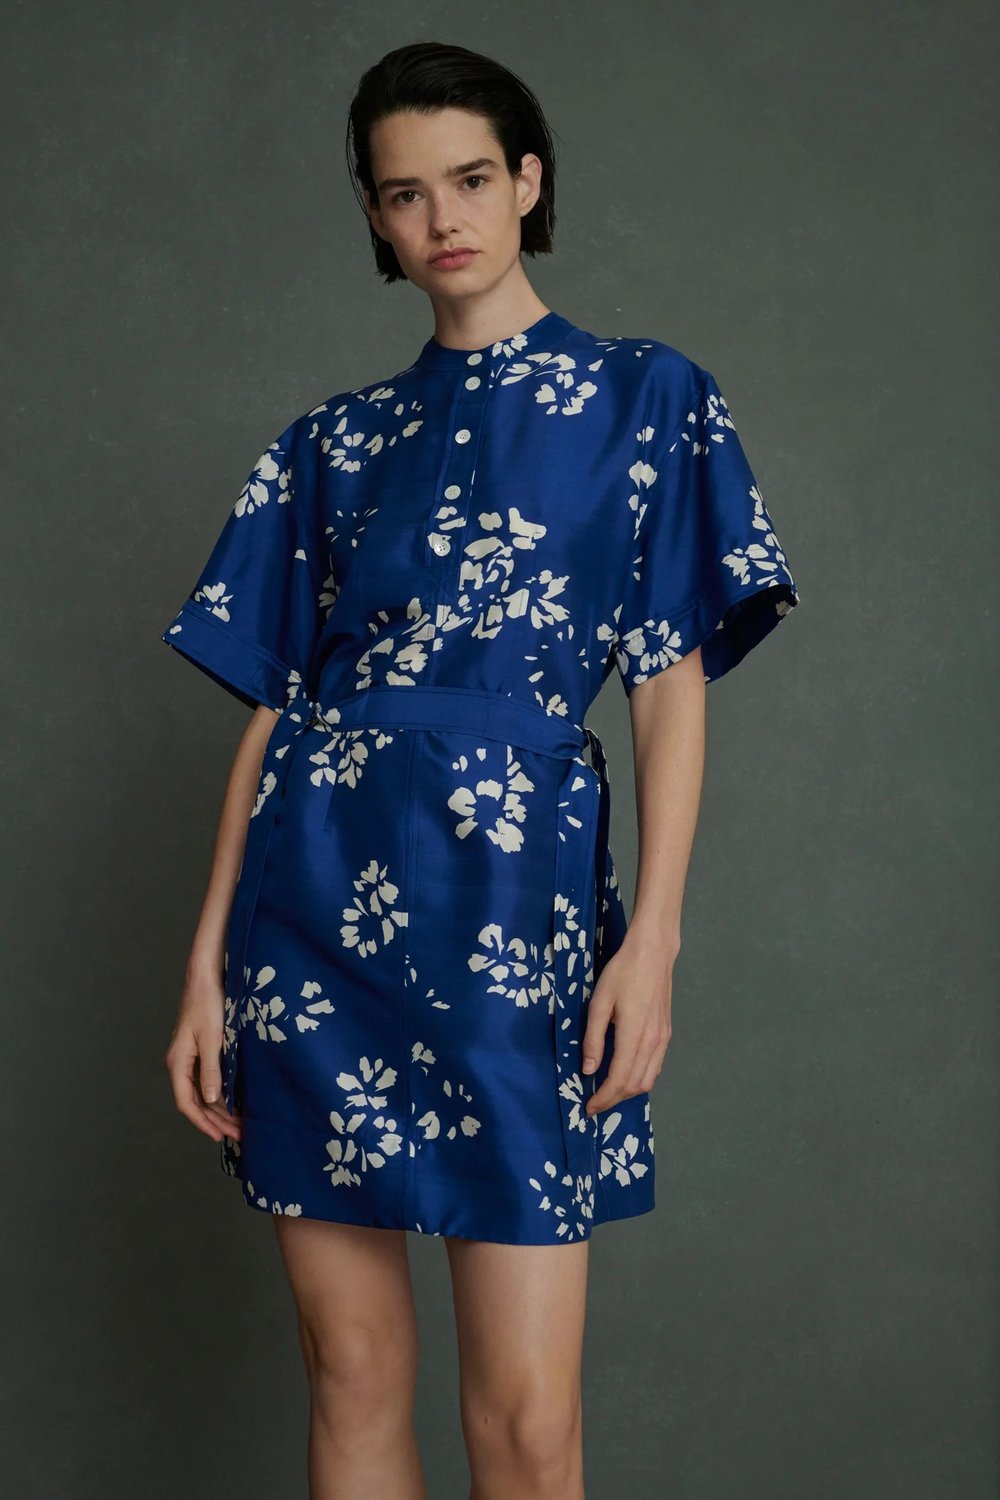 Wanda Dress in Silk Blue Floral from Soeur